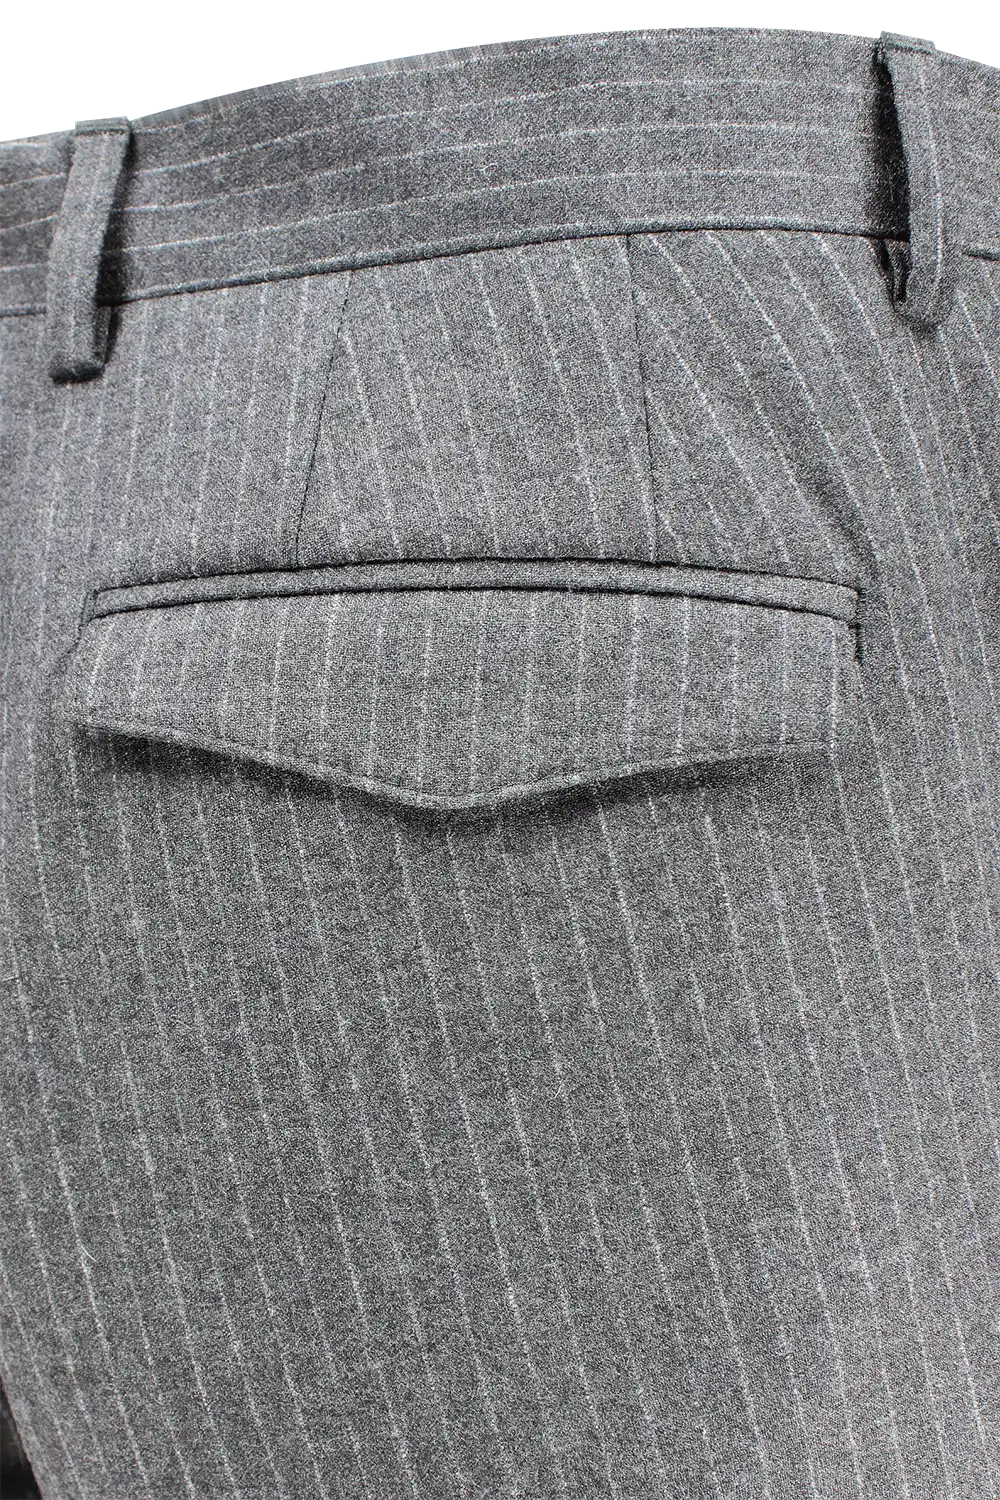 Pantalone con pince in lana antracite gessata tasca